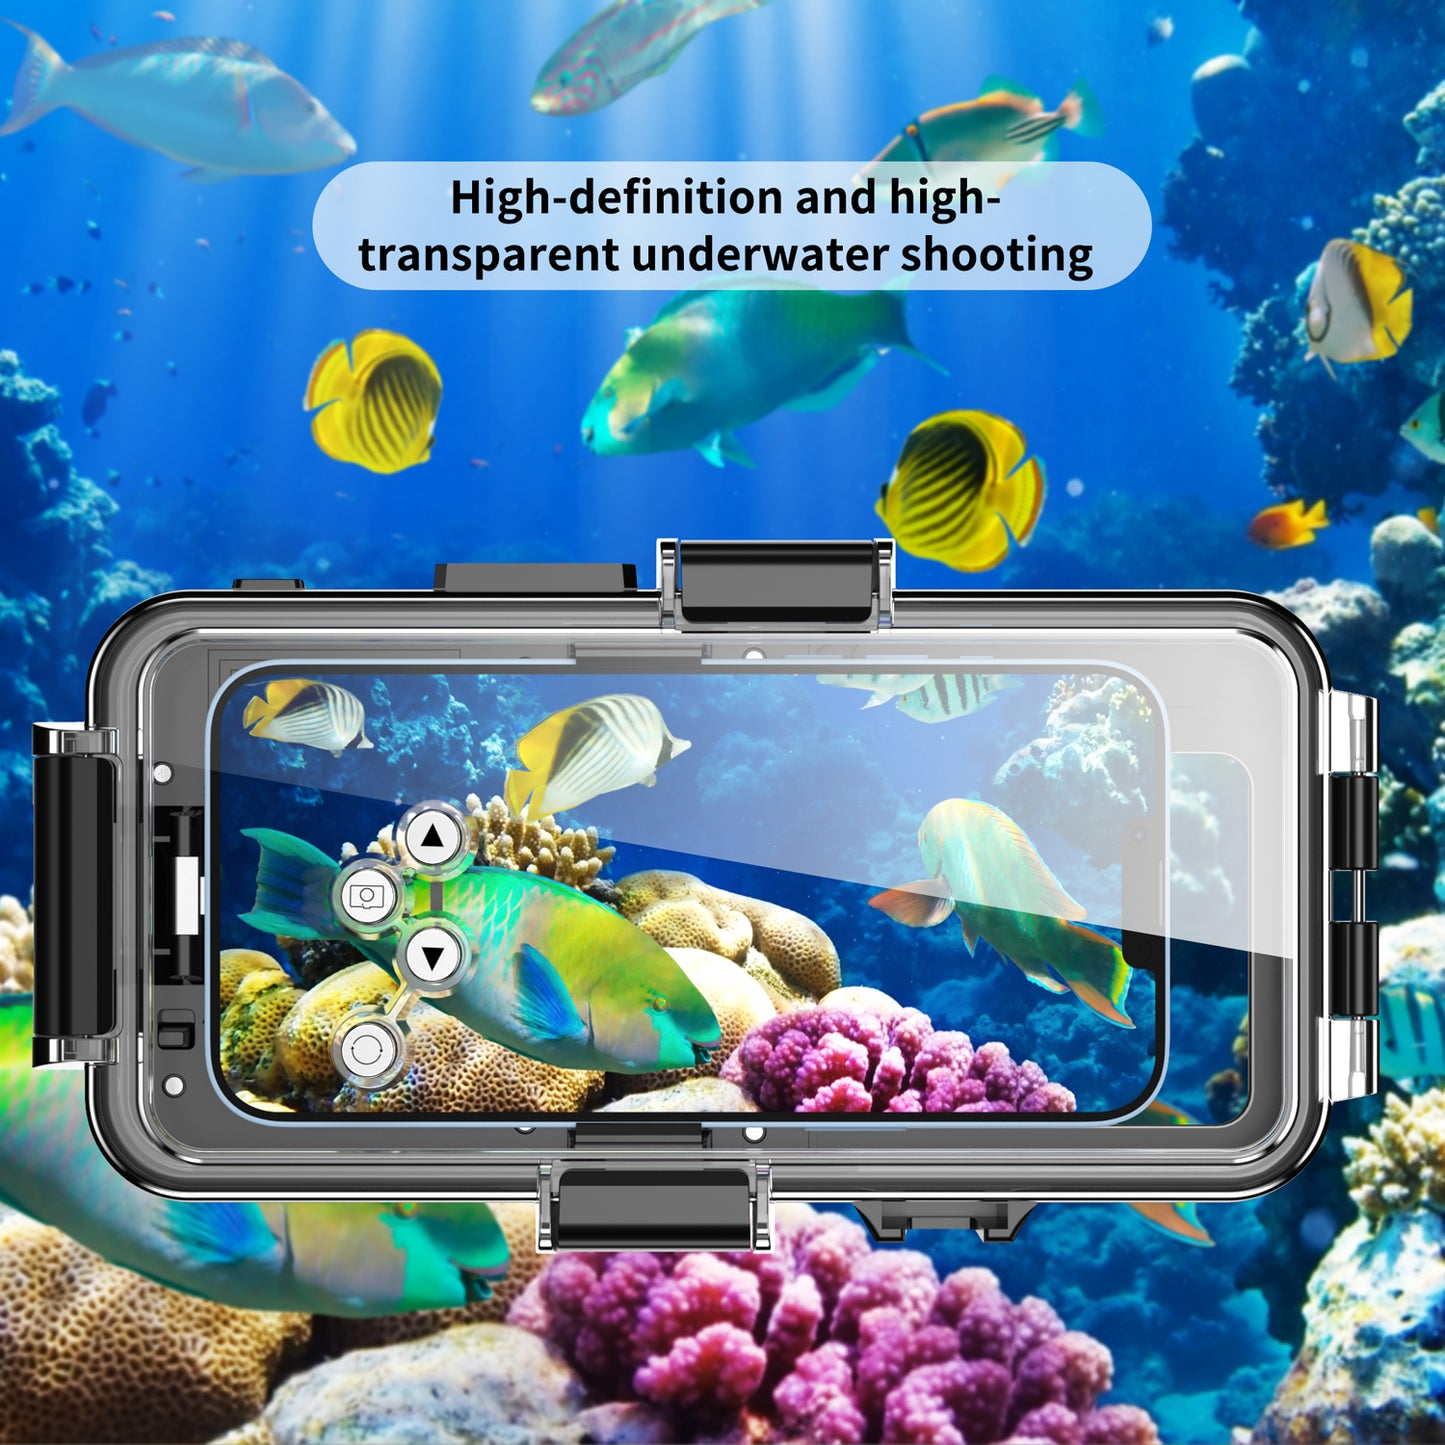 Apple iPhone 11 Case Waterproof Under Sea 30 Meters Profession Diving Take Photoes Videos